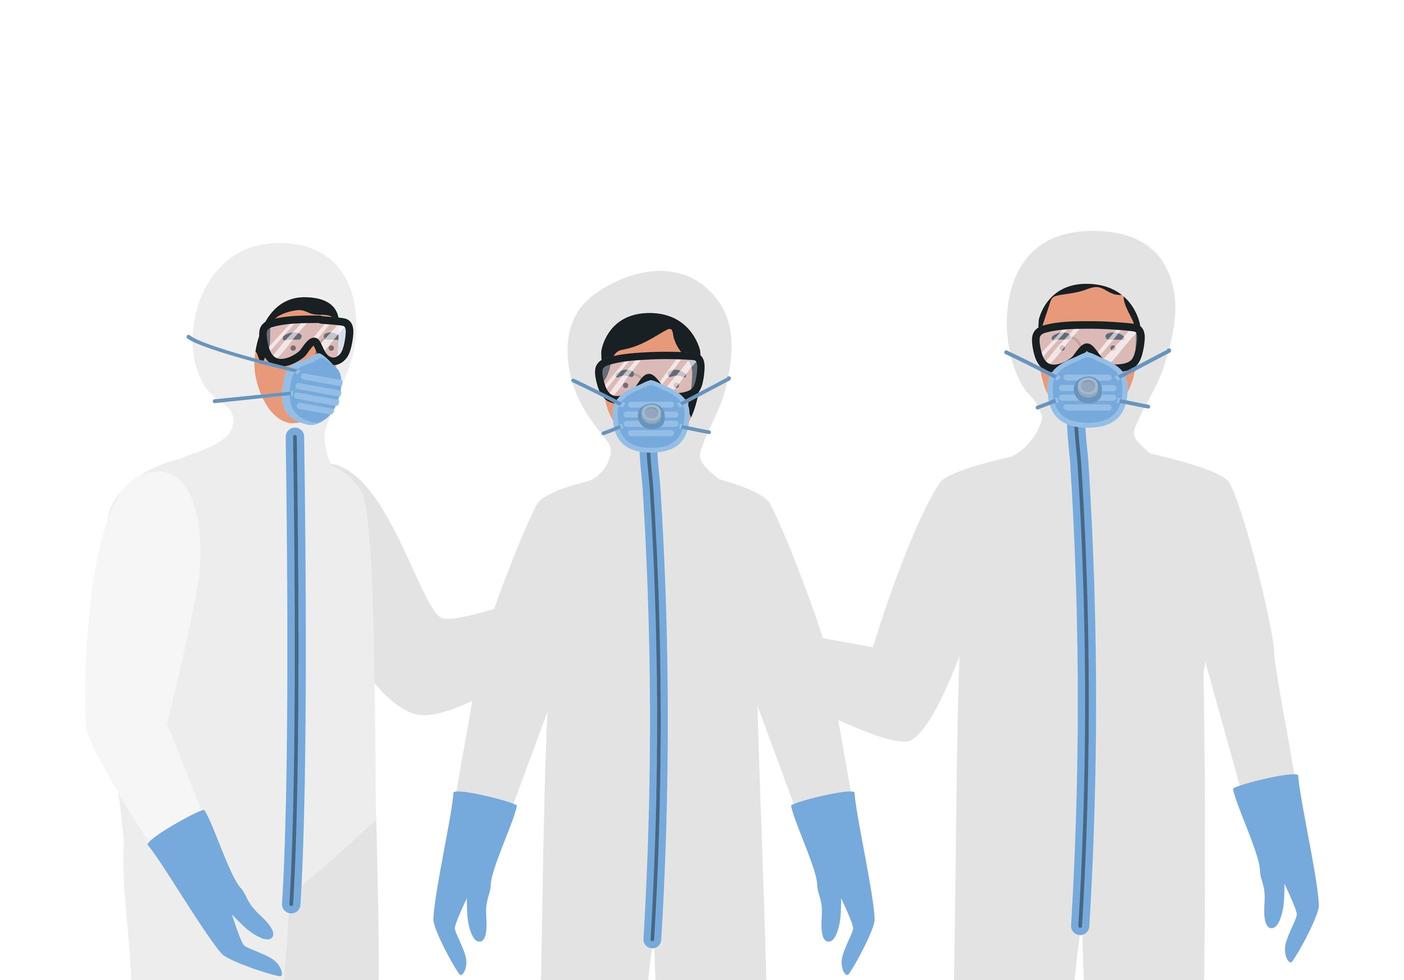 médicos con trajes de protección, gafas y máscaras. vector